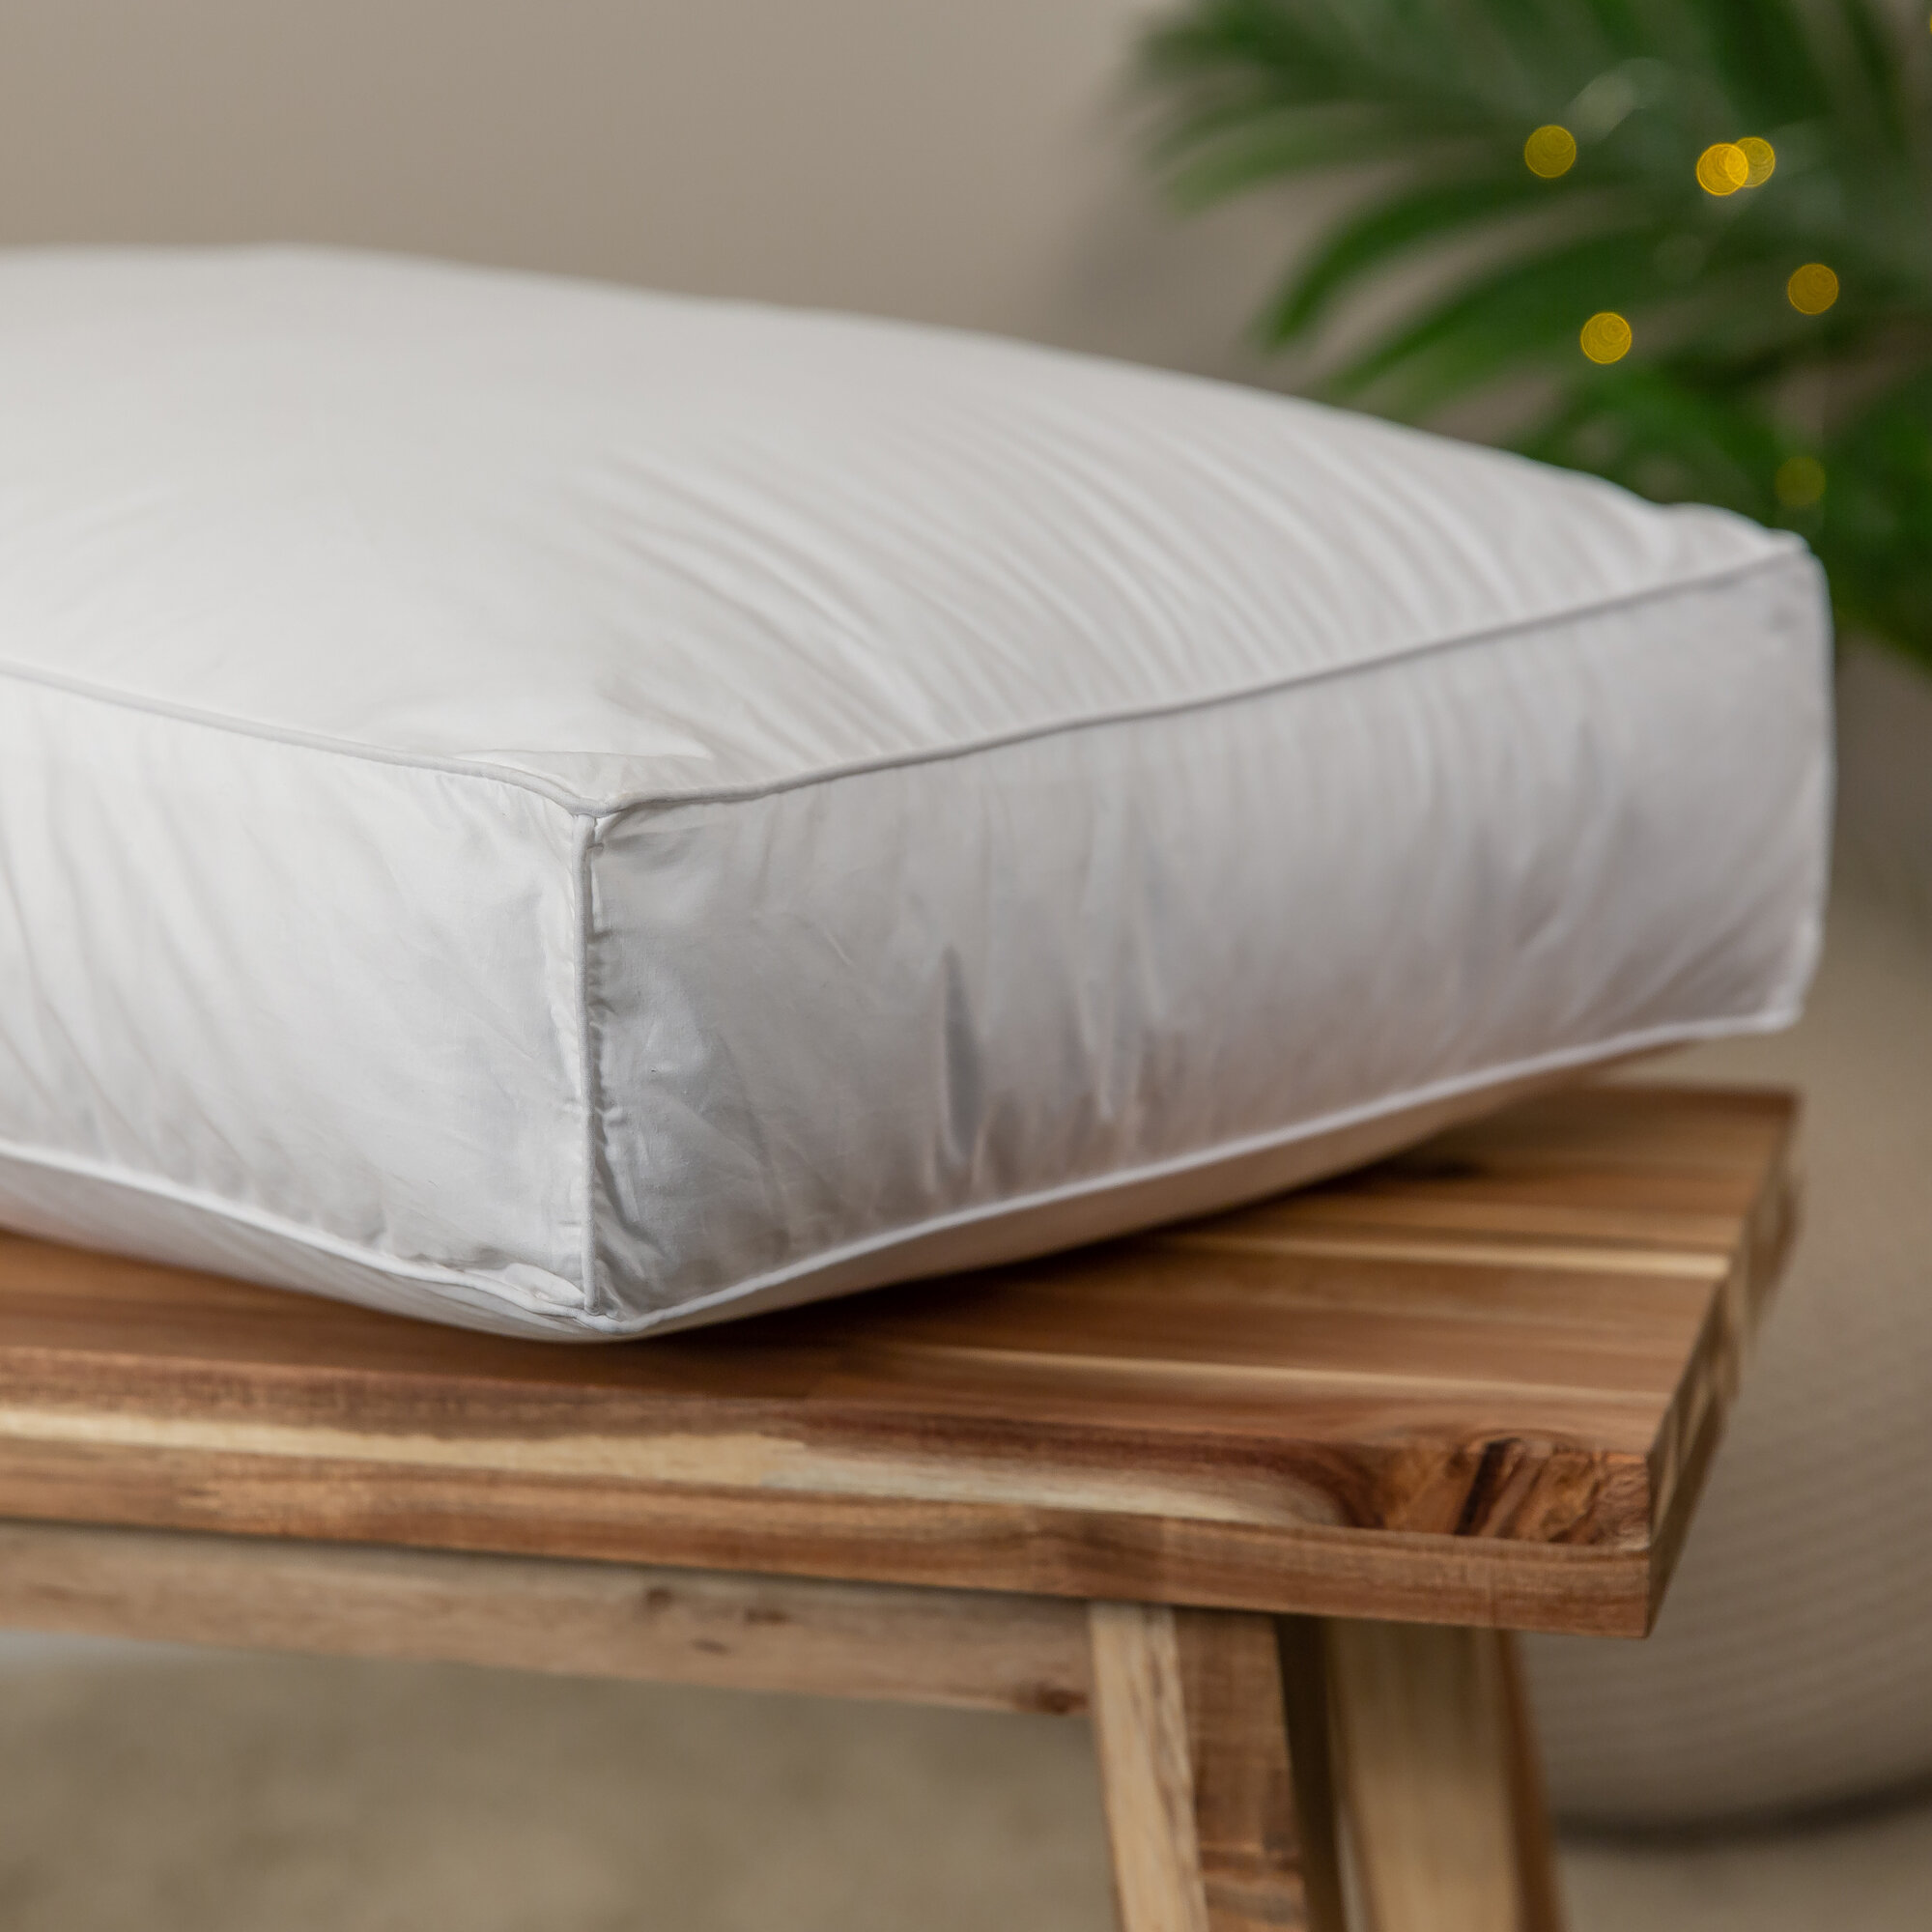 Snuggledown Side Sleeper Firm Support Pillow Reviews Wayfair Co Uk